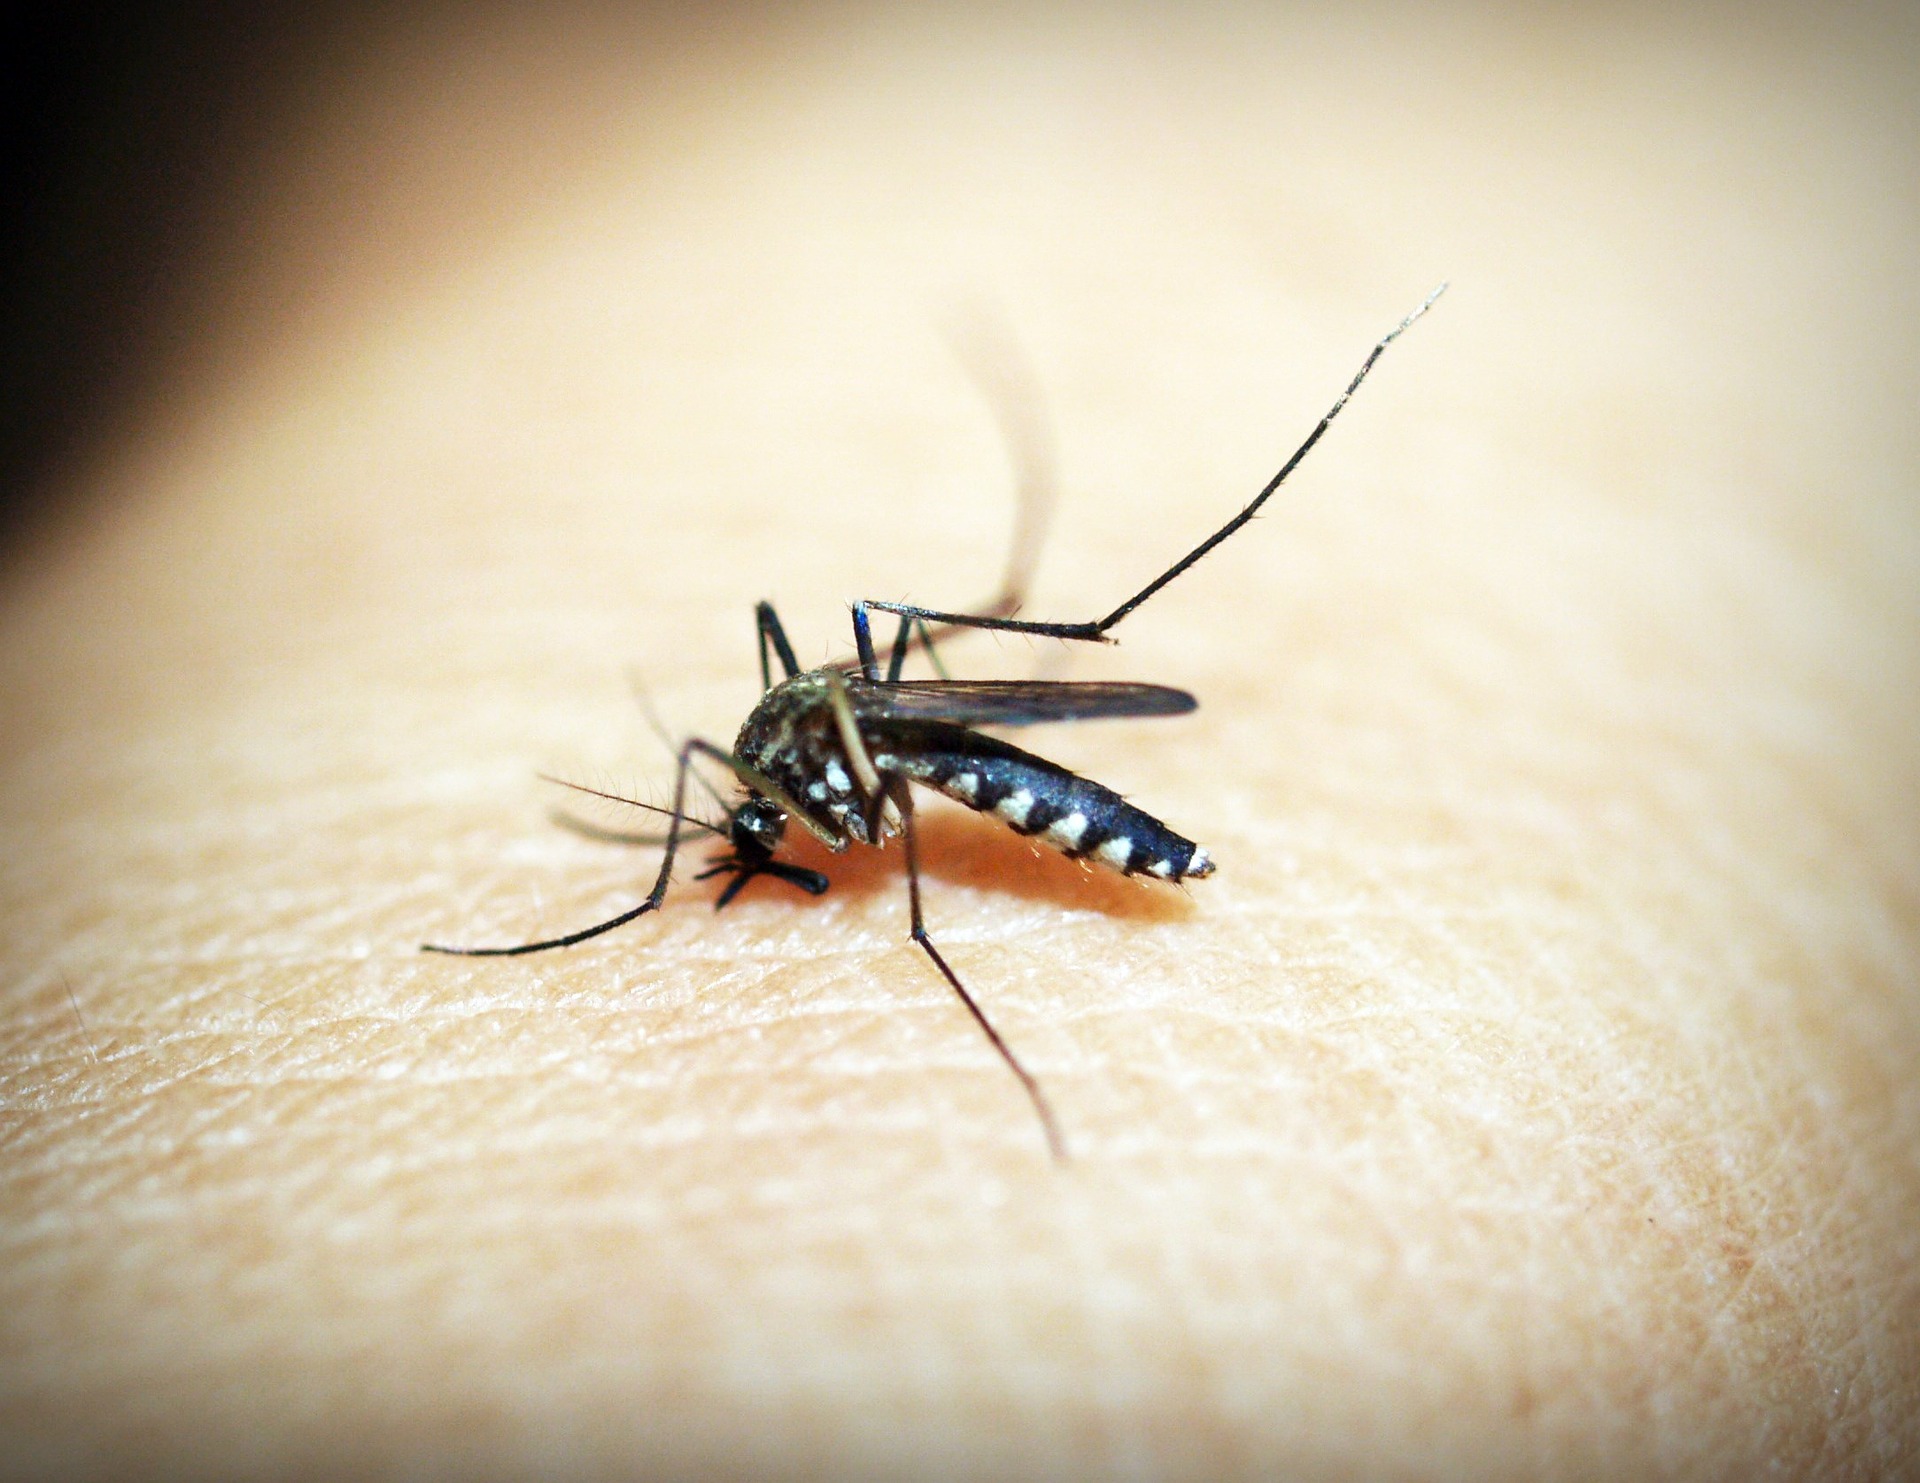 mosquito-1548947_1920.jpg